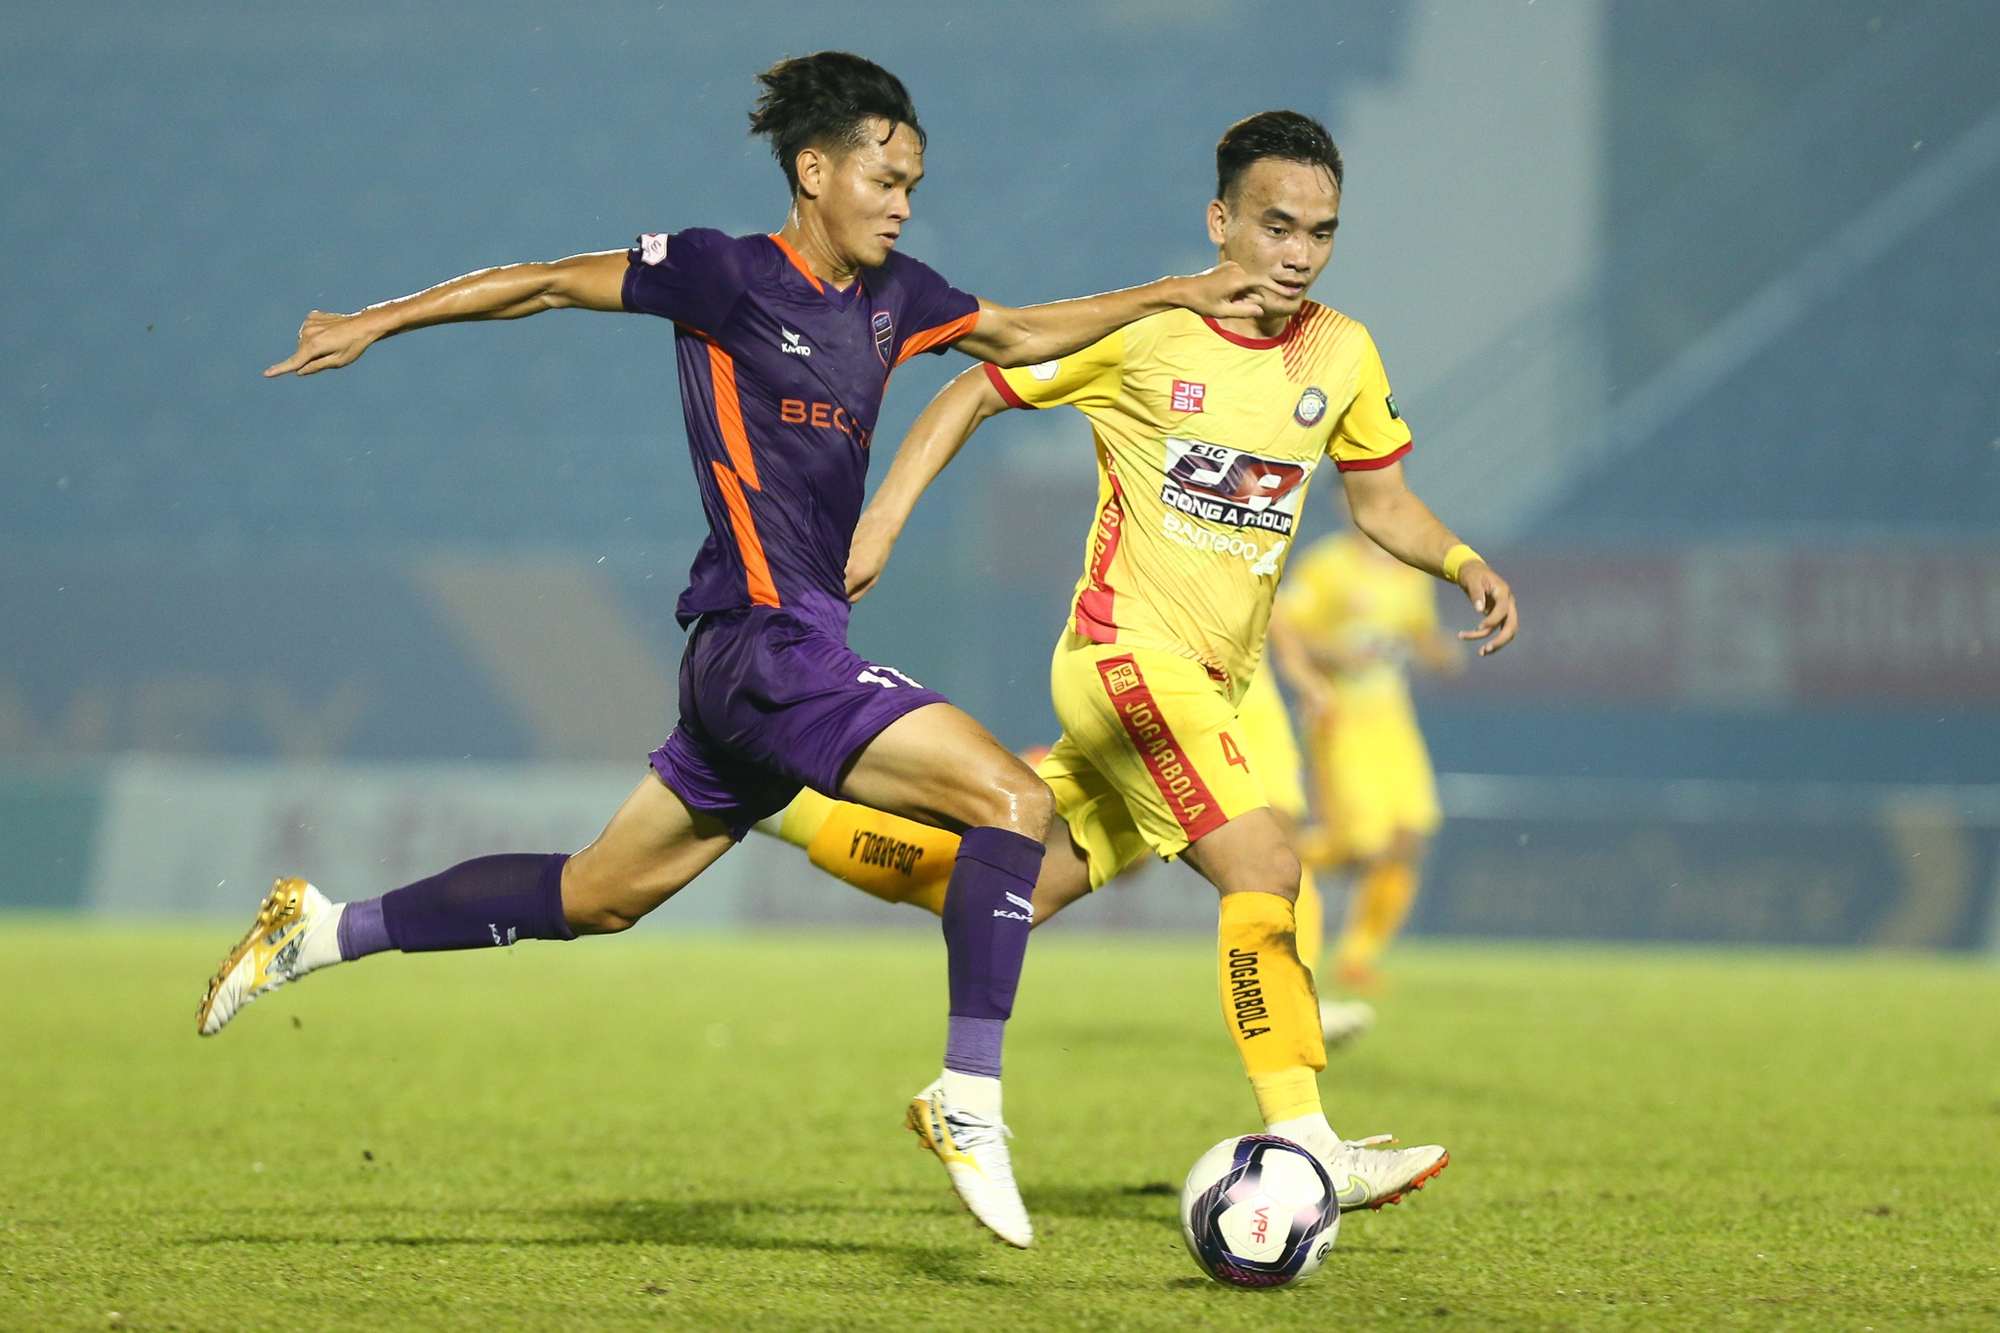 CLB Thanh Hóa: Tuyển thủ U23 Việt Nam dính chấn thương, khiến đội nhà thua trận - Ảnh 6.